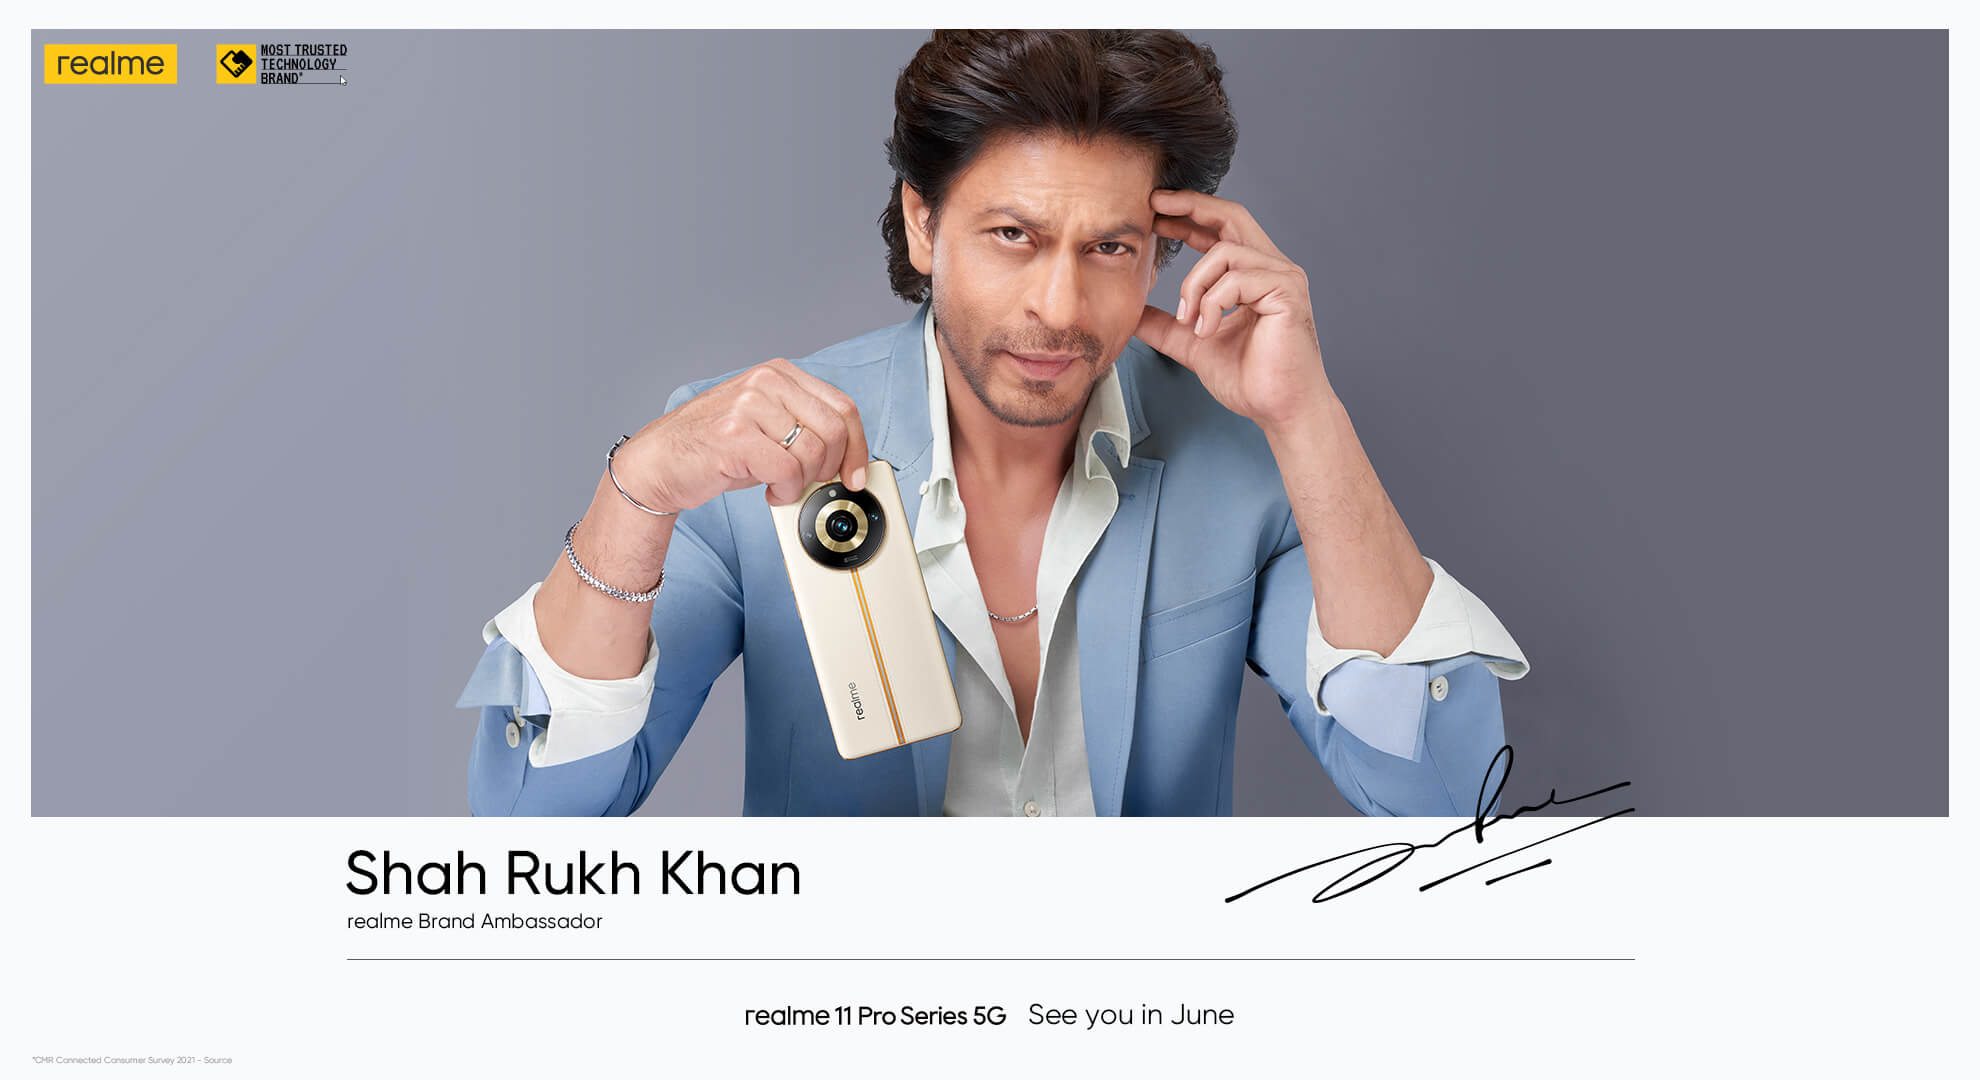 realme-Shah-Rukh-Khan